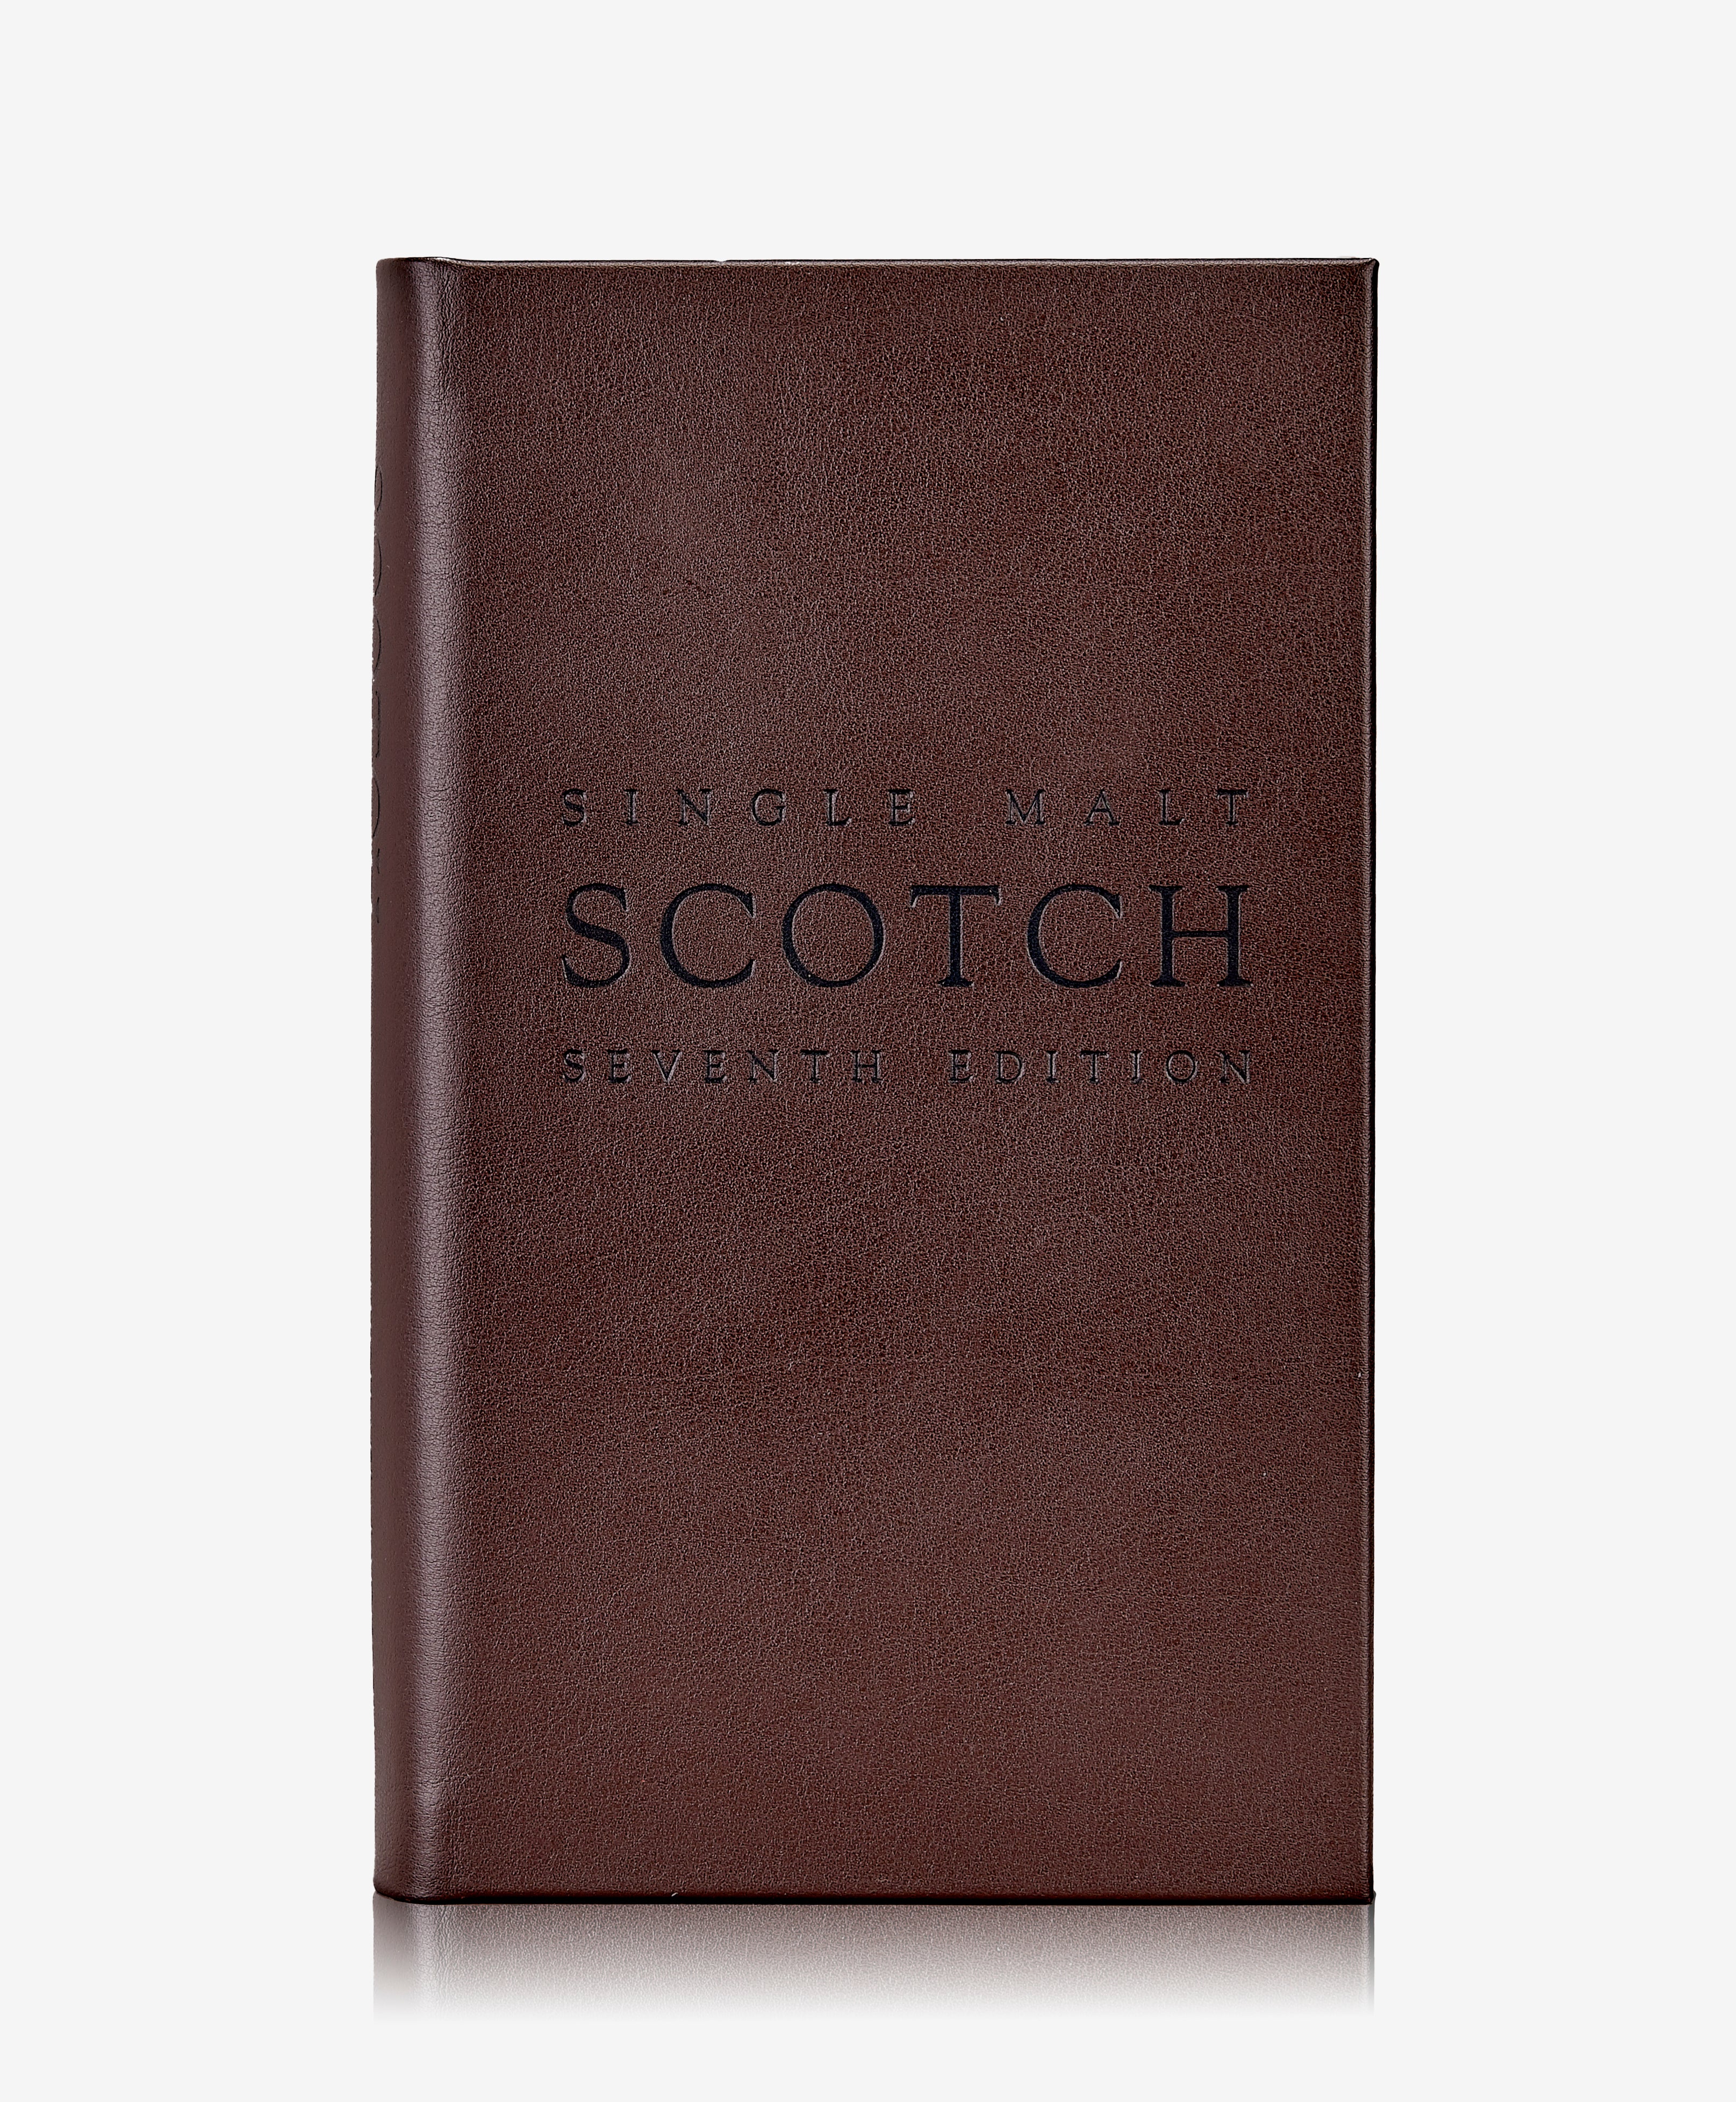 The Scotch Book